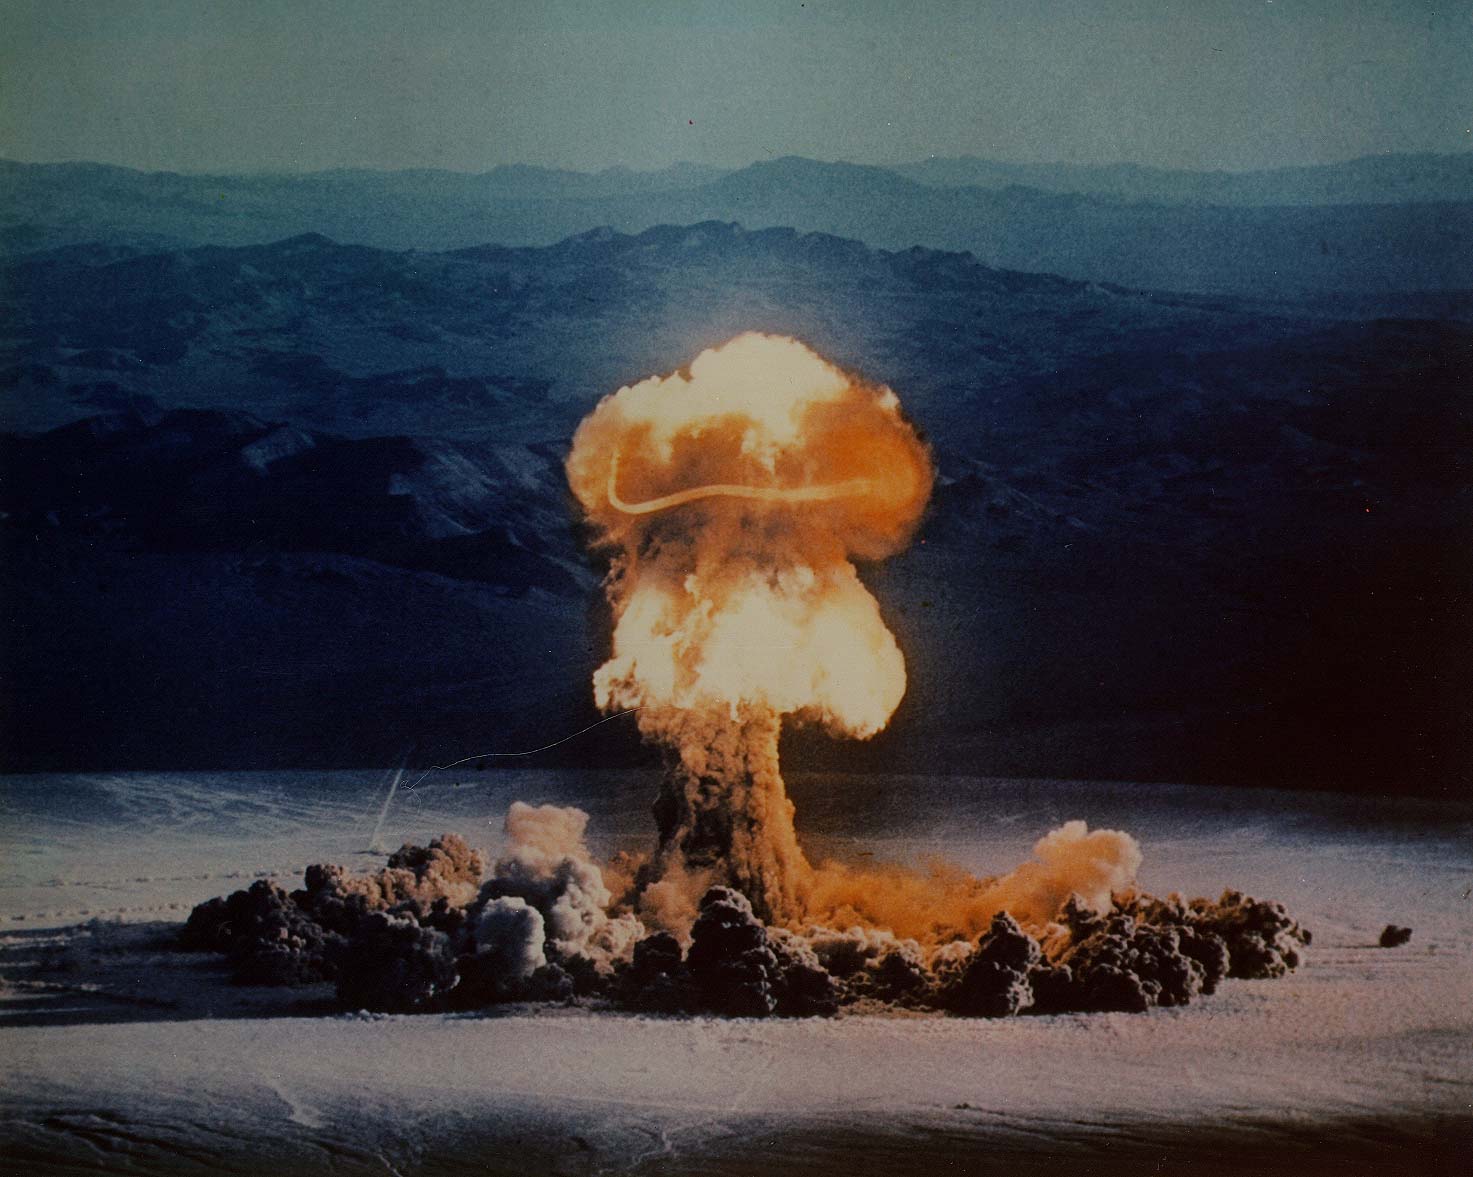 Az ötvenes évek atombomba tesztjeinek nyomára bukkantak az amerikai mézben